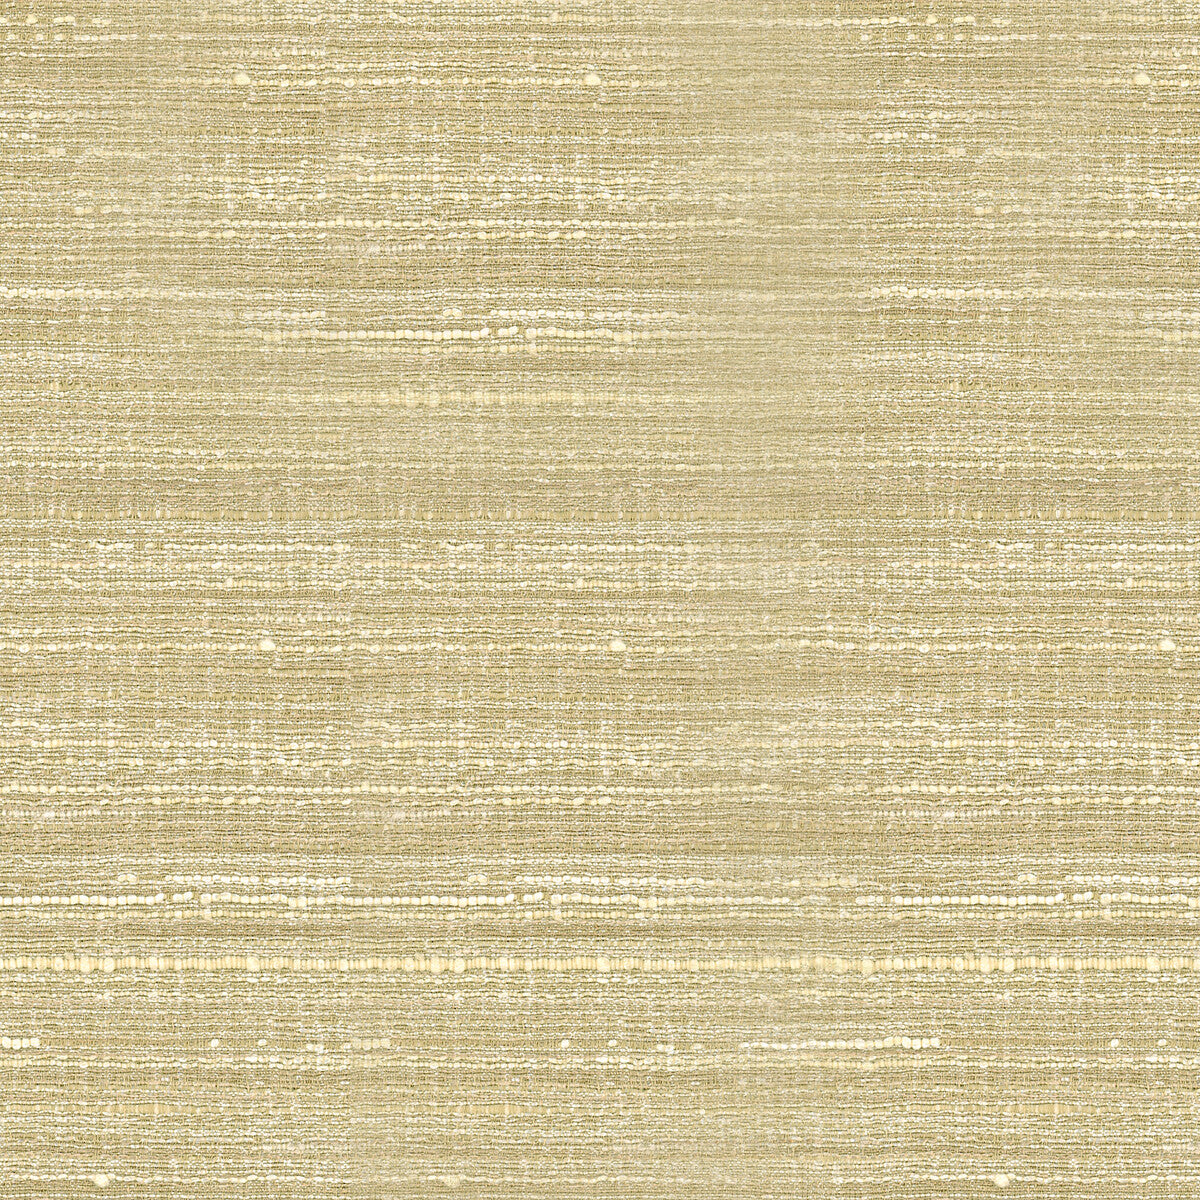 Kravet Basics fabric in 34672-116 color - pattern 34672.116.0 - by Kravet Basics